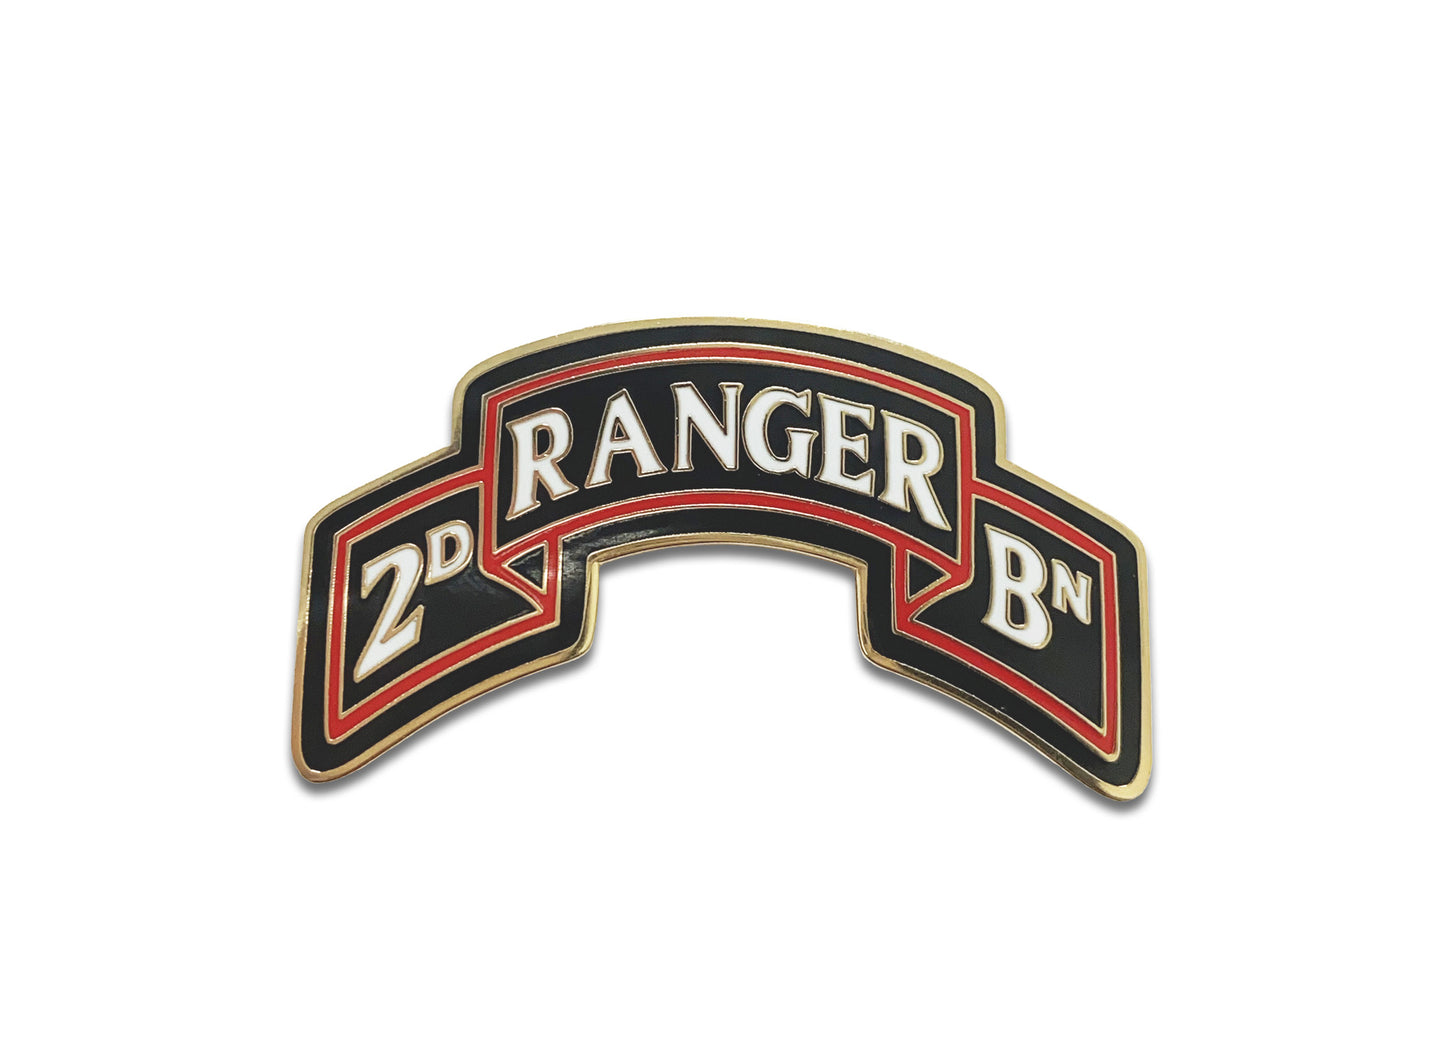 U.S. Army 75th Ranger Regiment 2Nd Battalion Scroll CSIB.